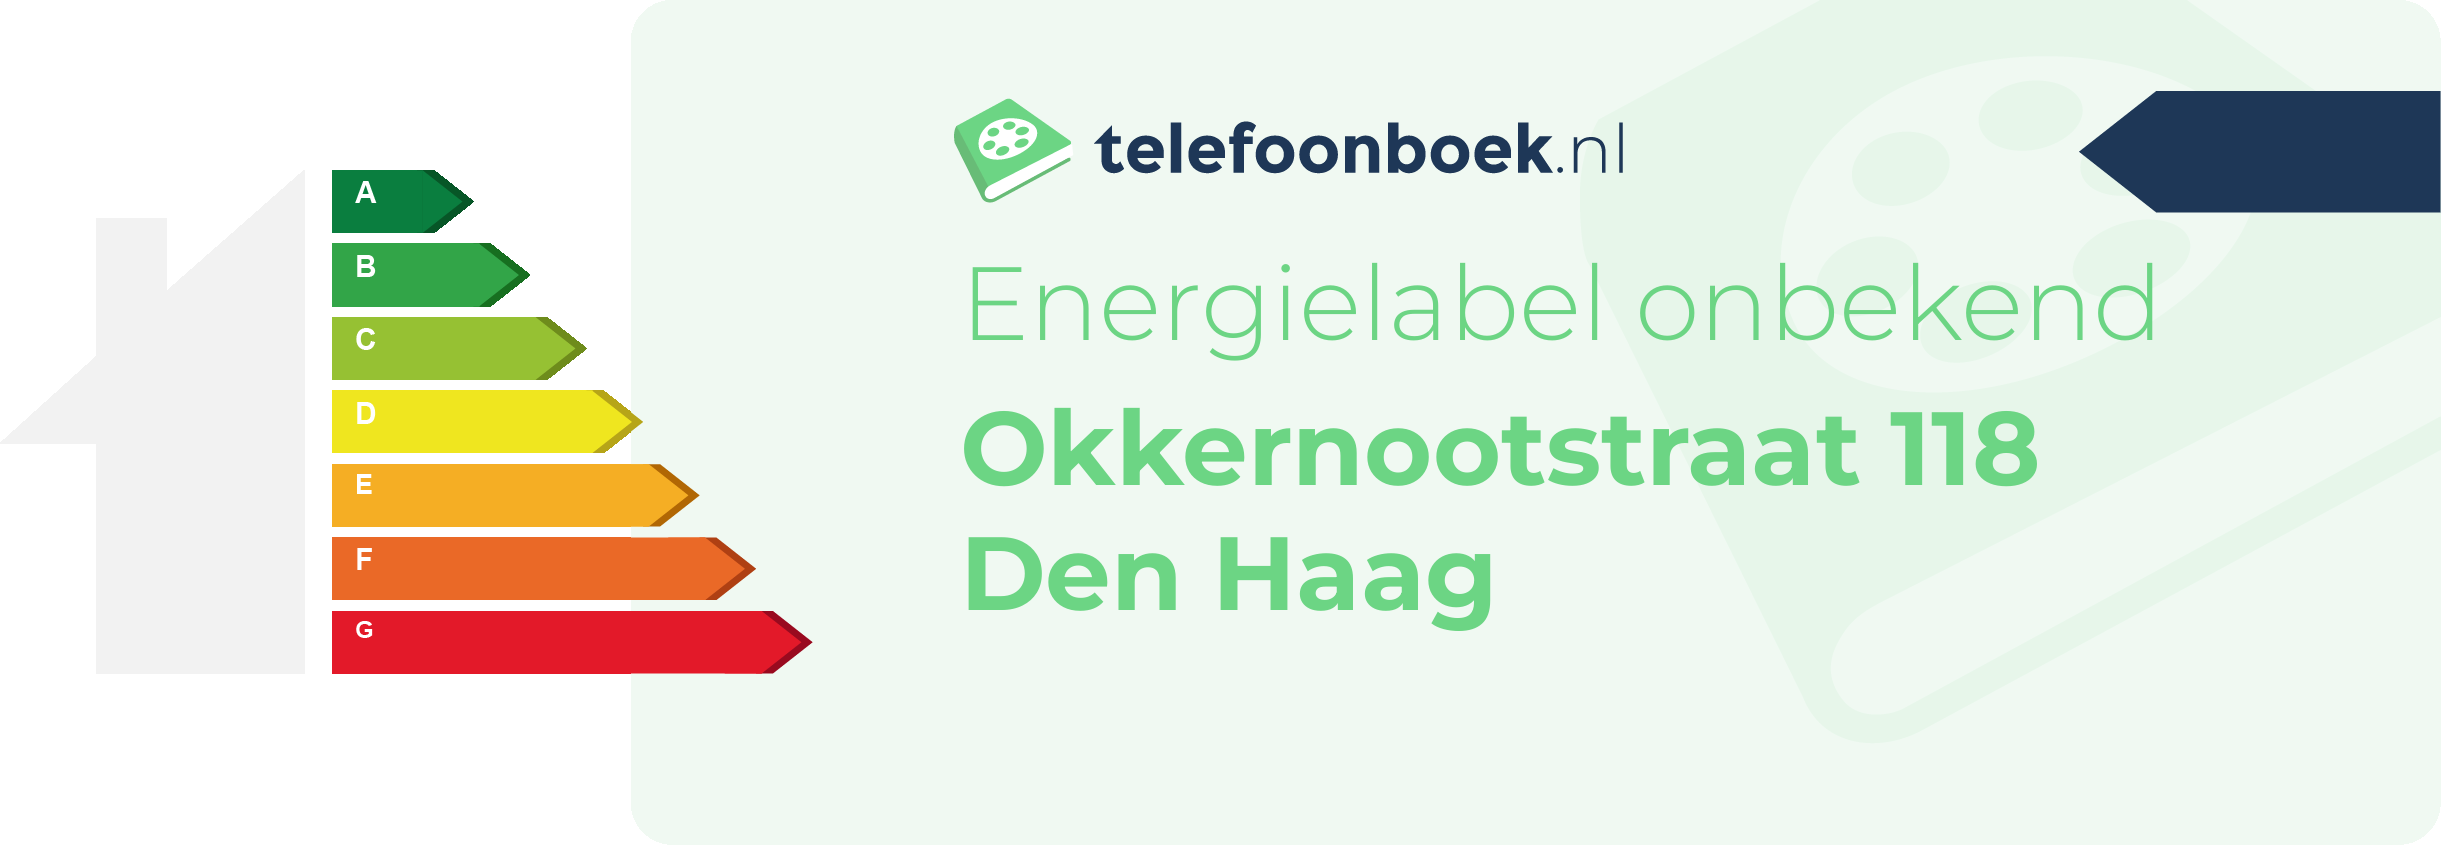 Energielabel Okkernootstraat 118 Den Haag